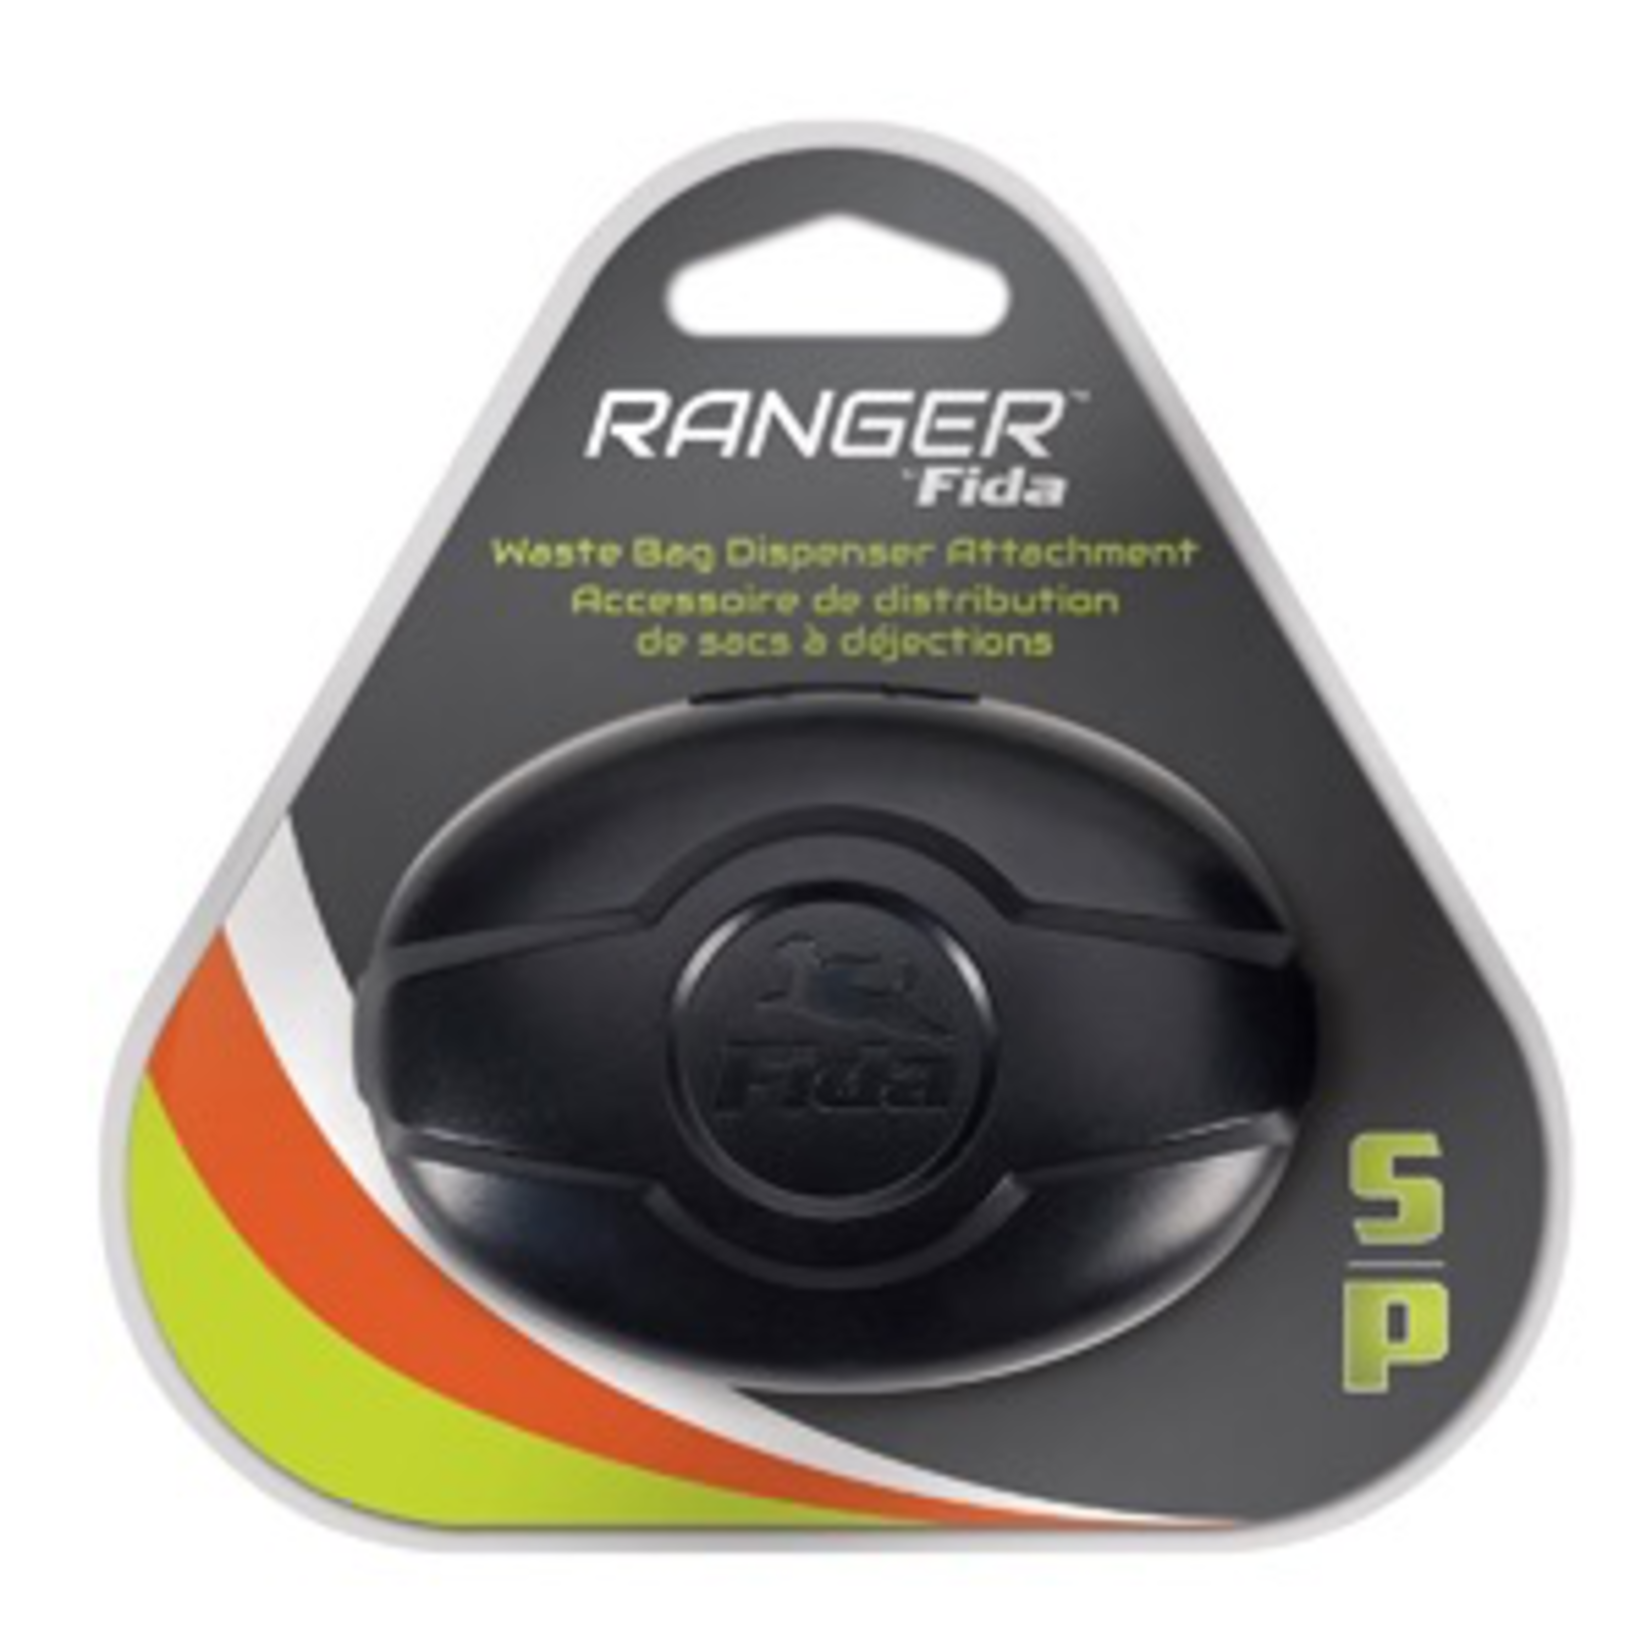 RANGER (D) Ranger by Fida Waste Bag Dispenser - Small (fits VP2151 & VP2155)